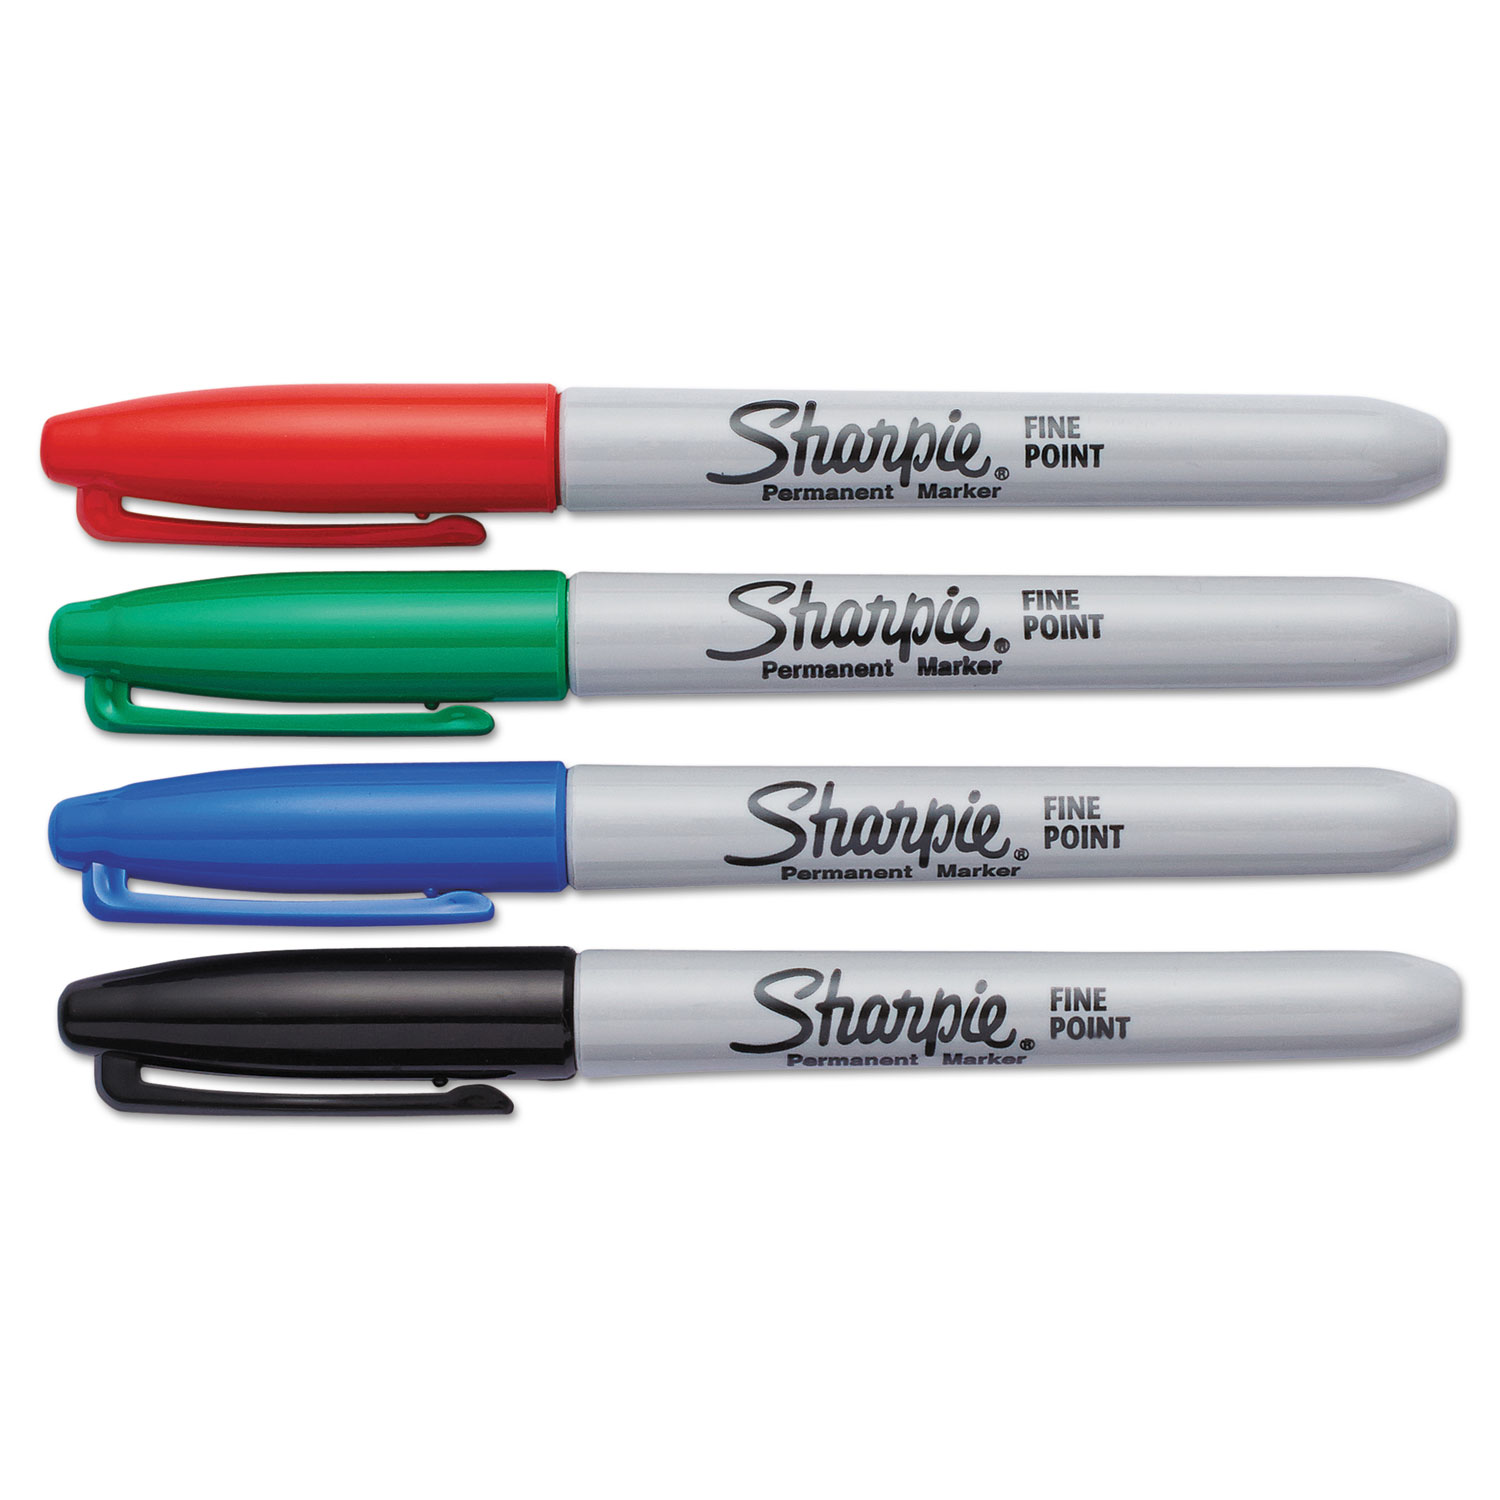 36-Count Felt Tip Pens, Assorted Colors